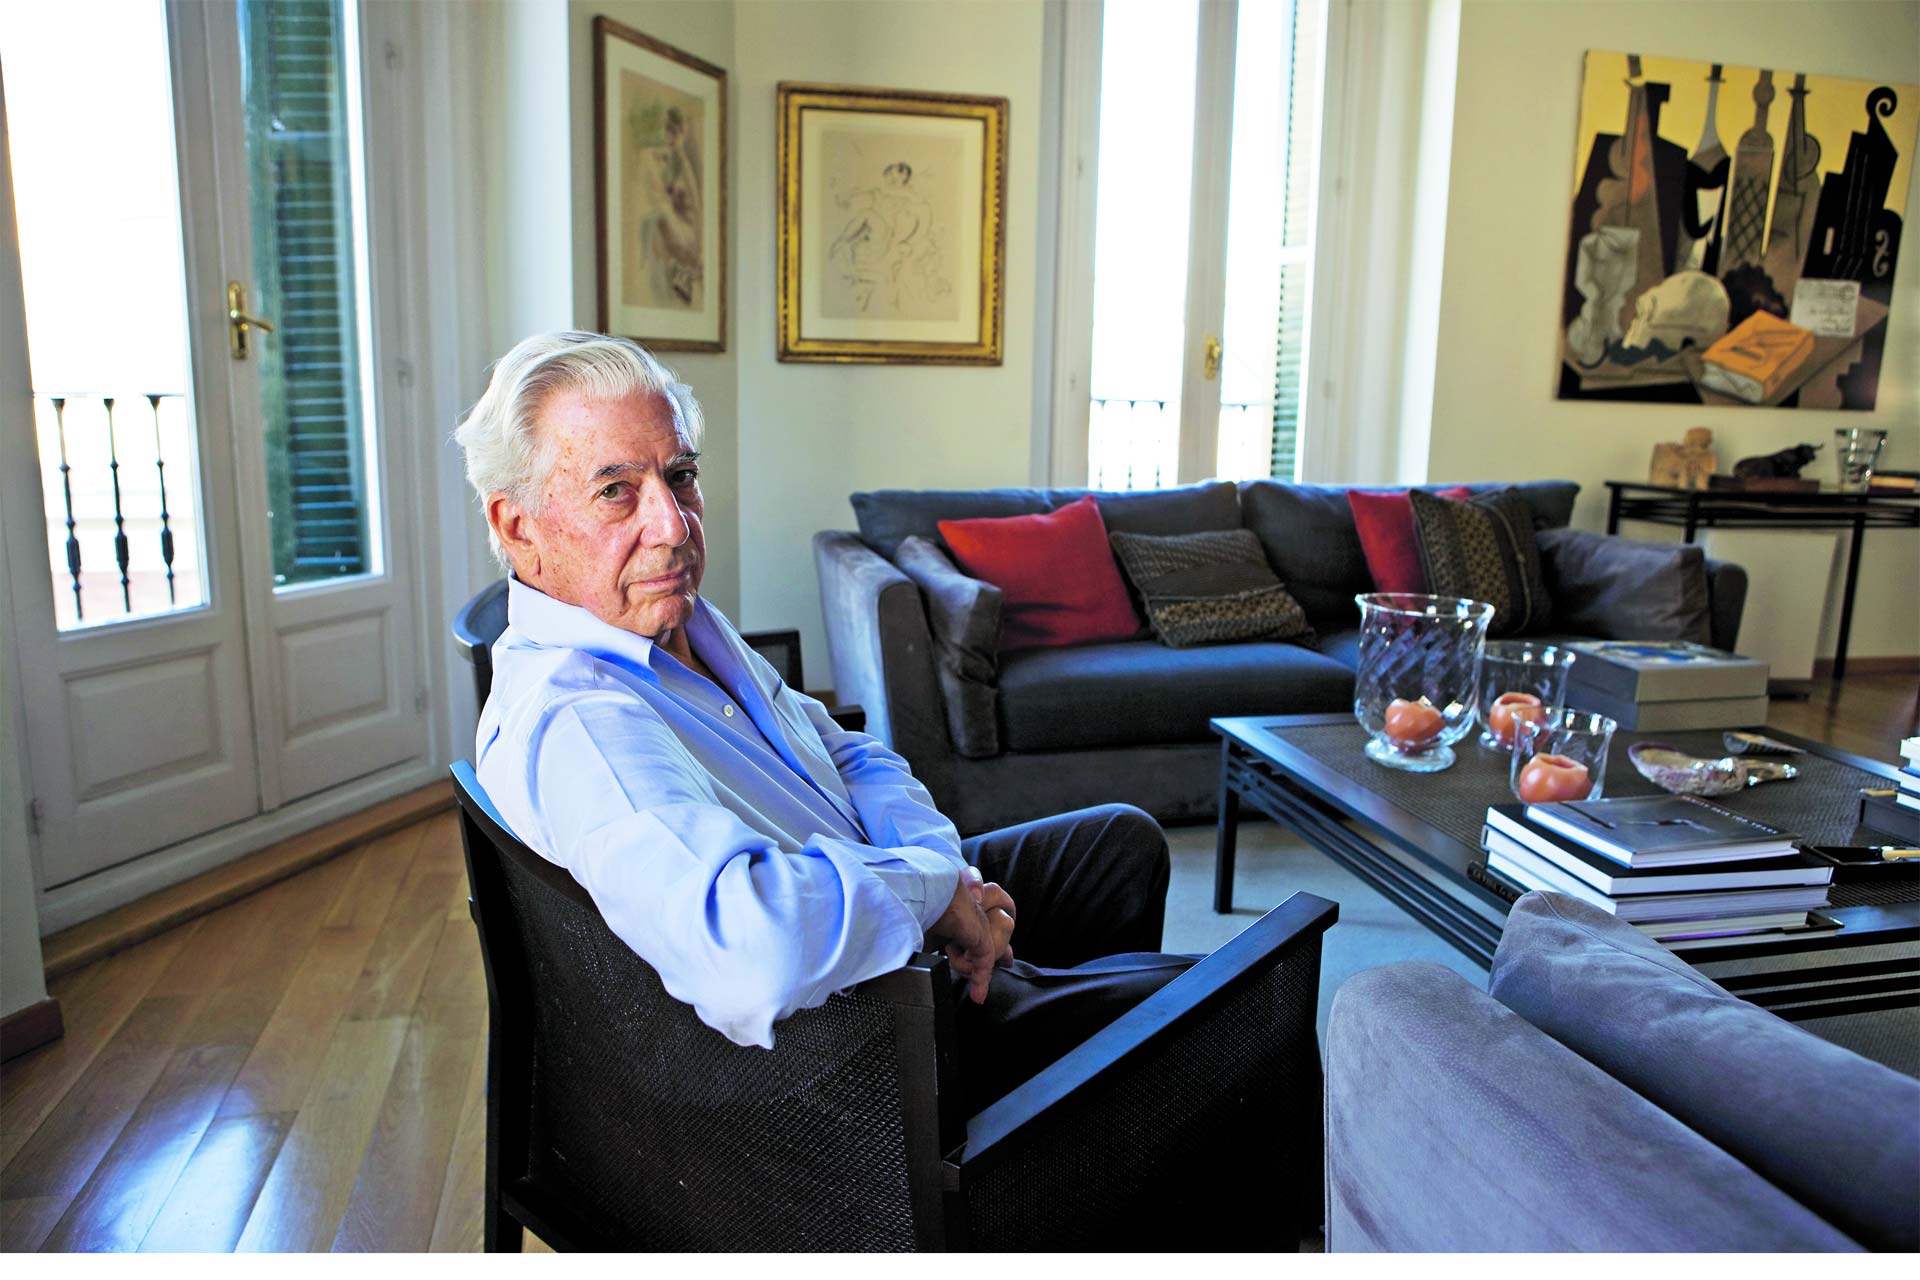 La nueva novela de Vargas Llosa, así como uno de los textos prohibidos más famoso de la historia, llegarán a las vitrinas